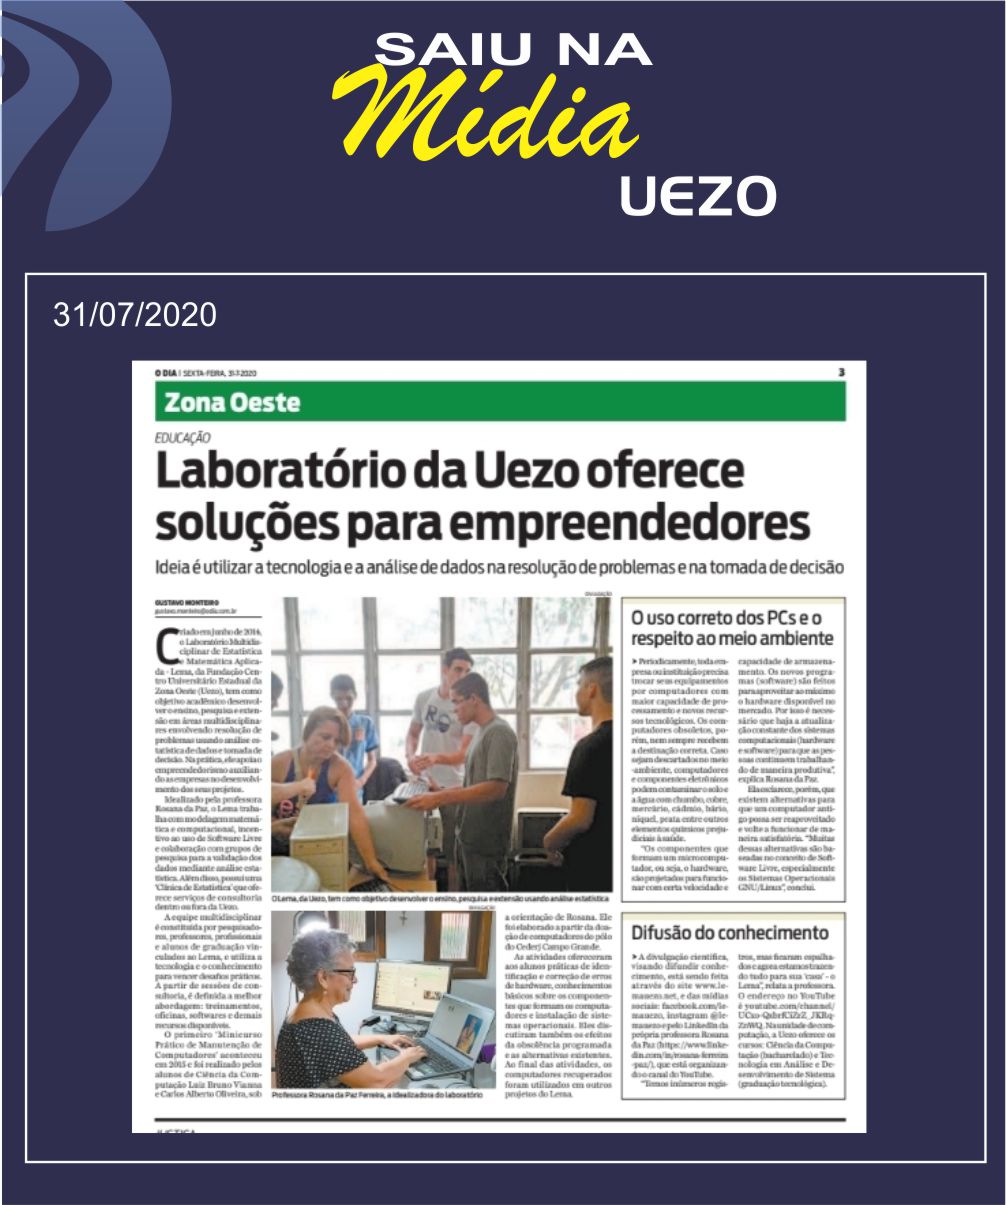 Laboratório da UEZO oferece soluções para empreendedores